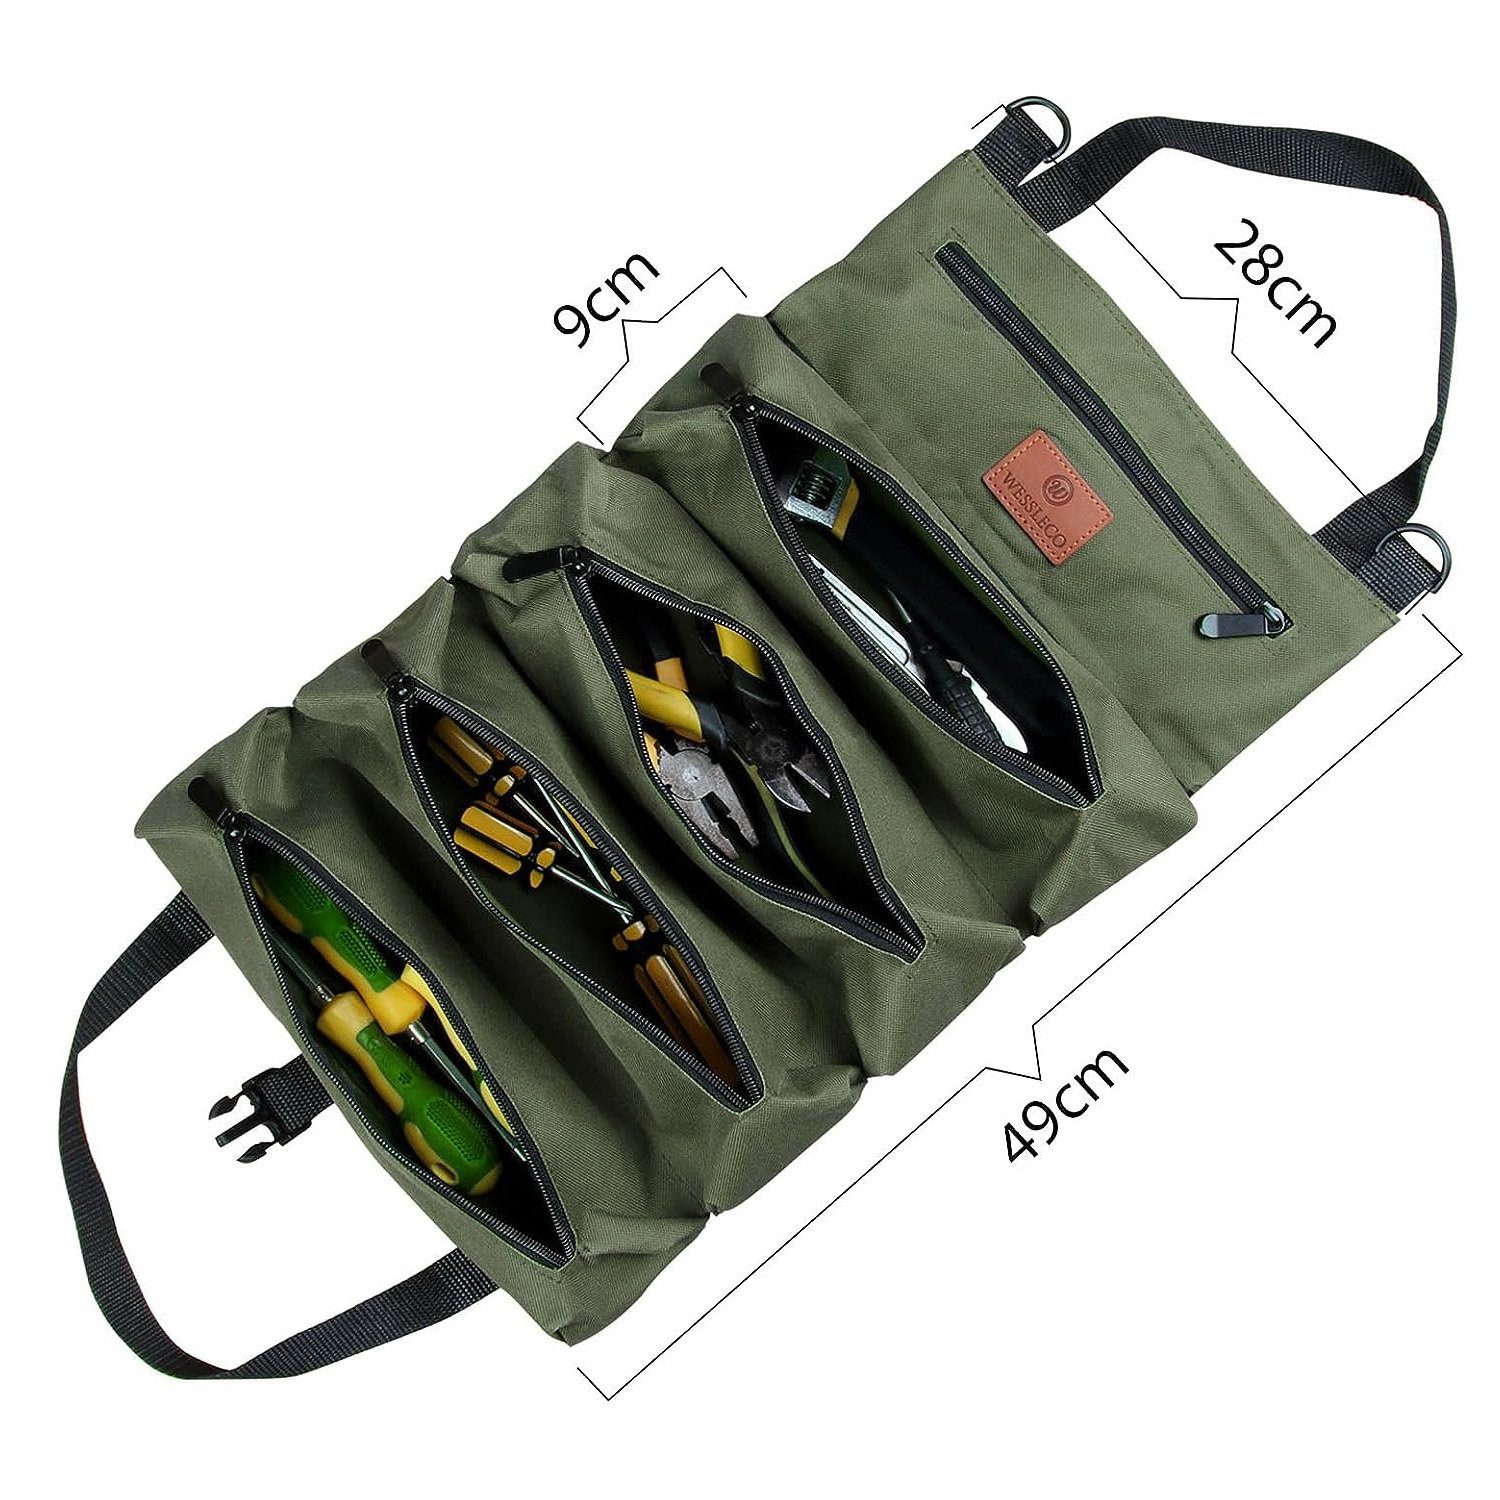 Werkzeugtasche Reißverschlusstaschen 5 Werkzeugtasche NUODWELL mit Canvas Werkzeug Rolltasche,